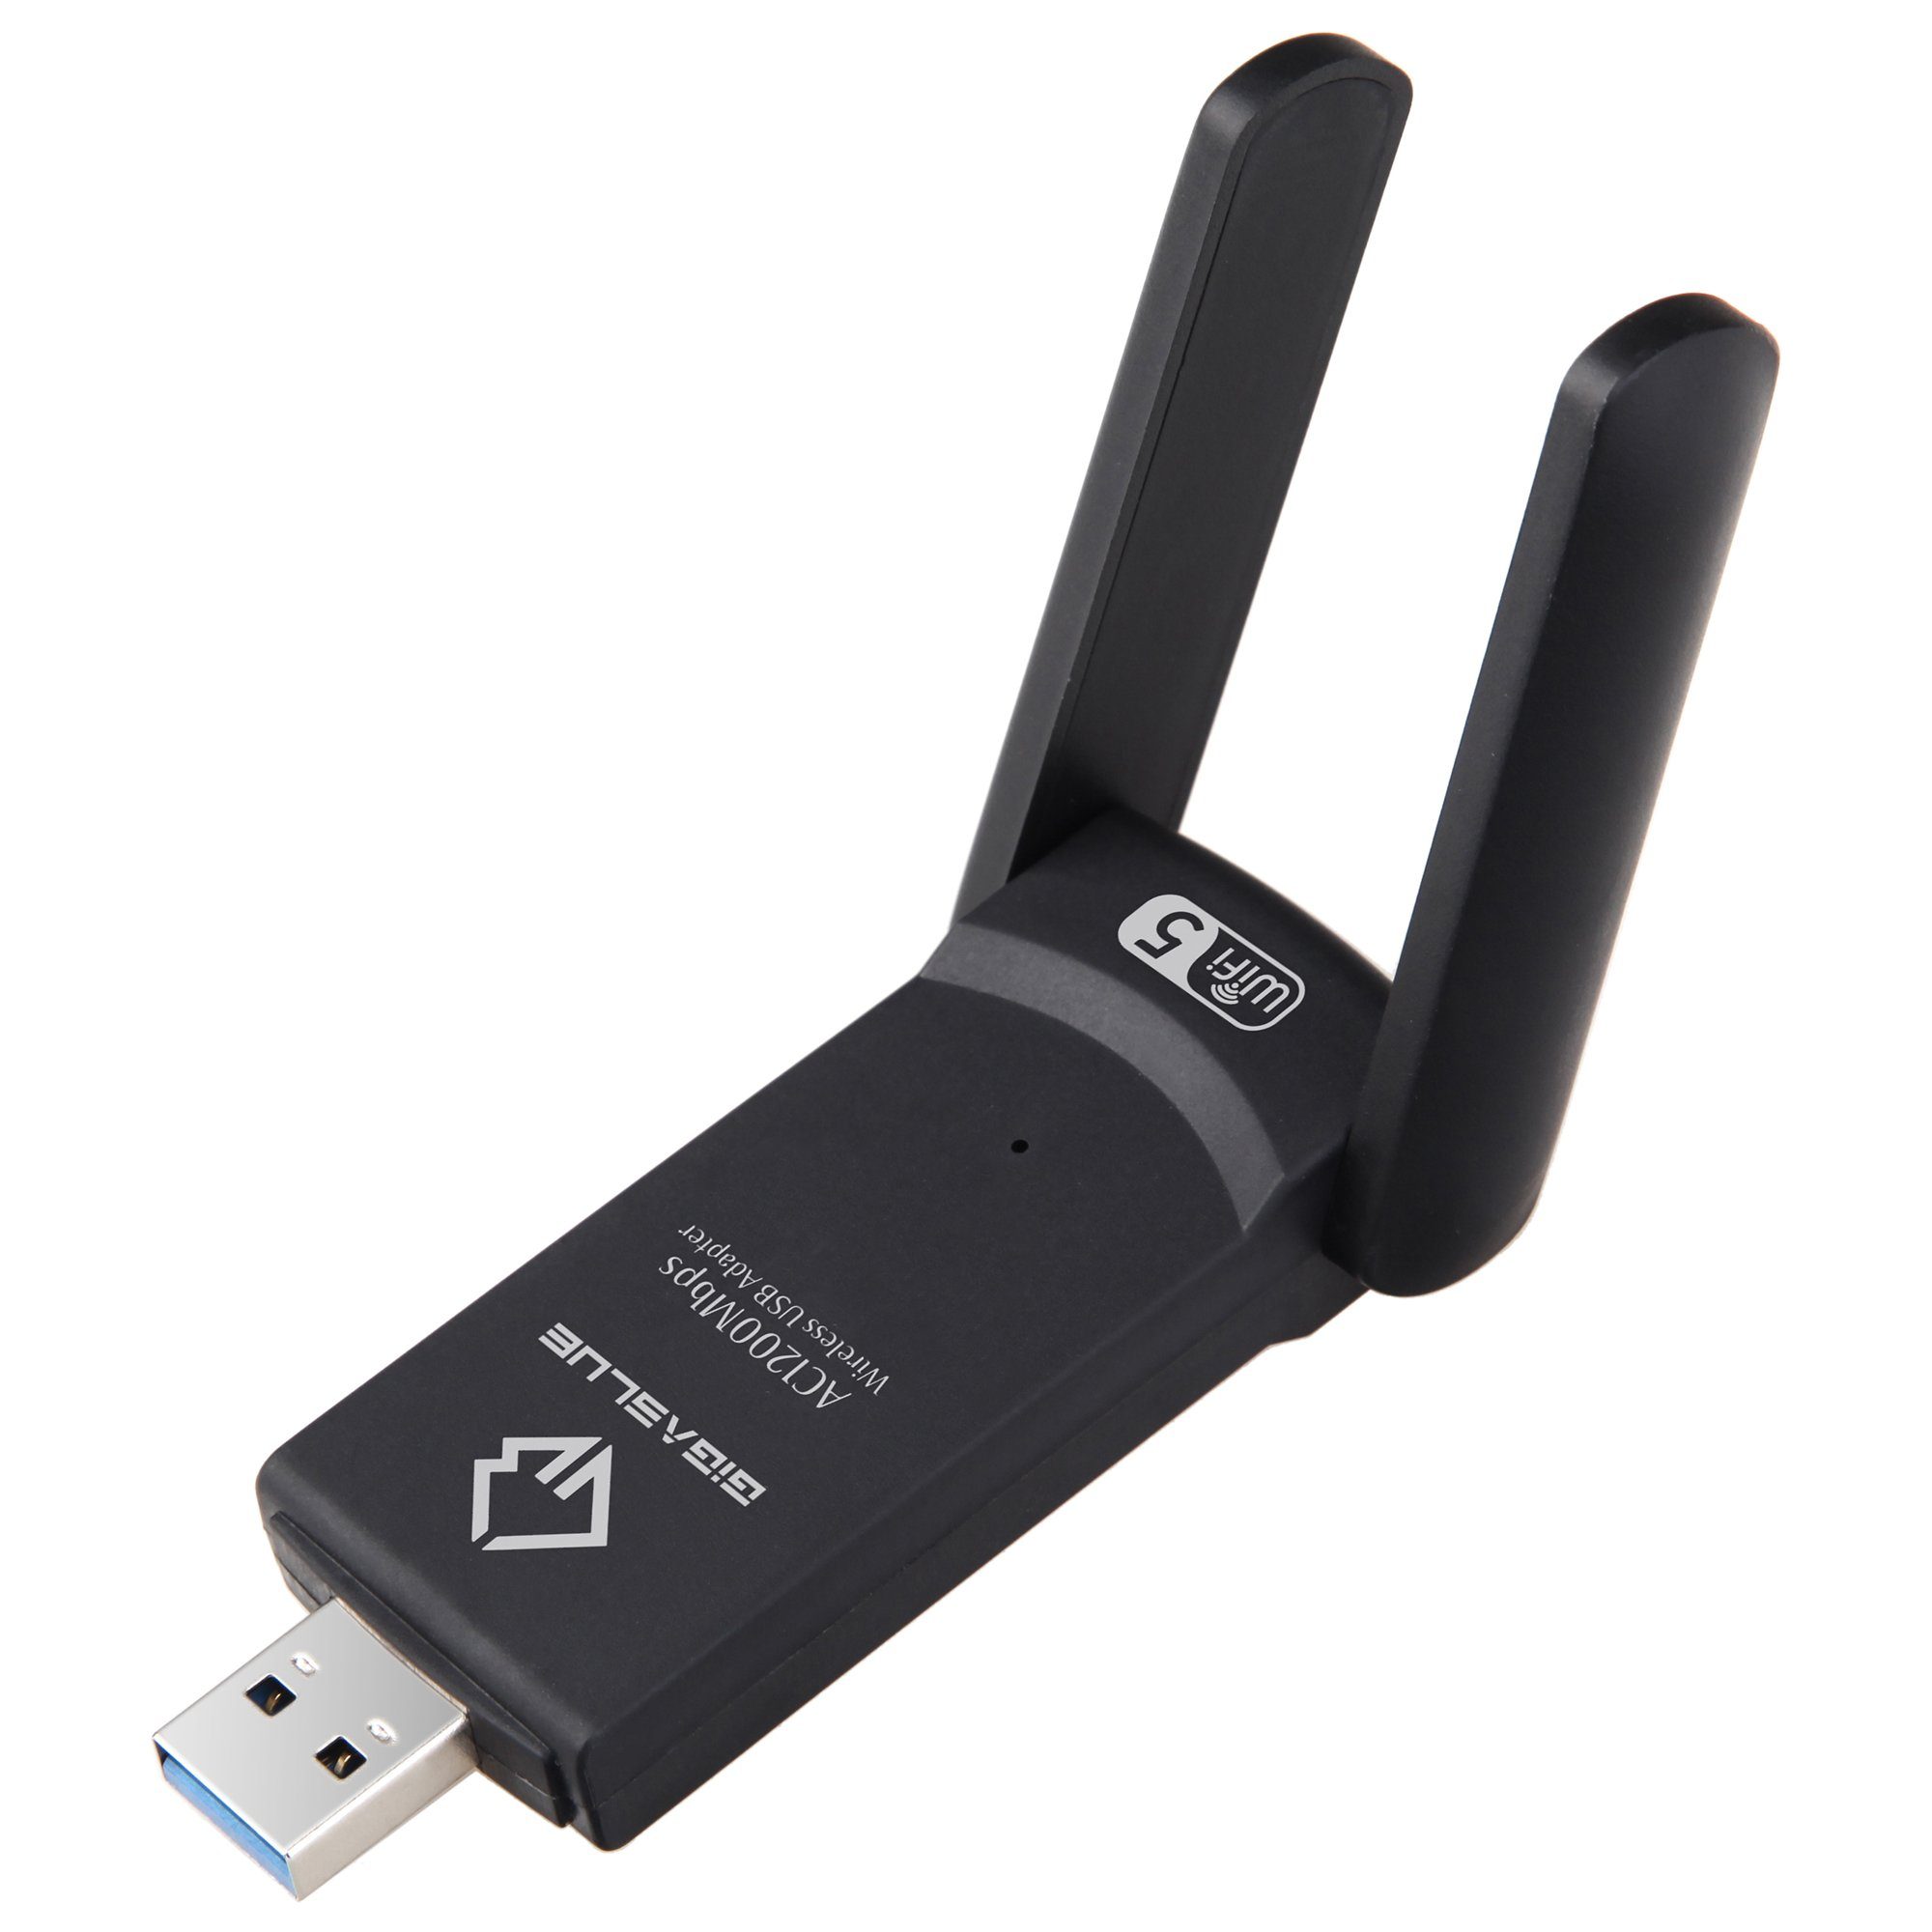 USB 3.0 GigaBlue 1200Mbps Kabel-Receiver Gigablue adapter WiFi